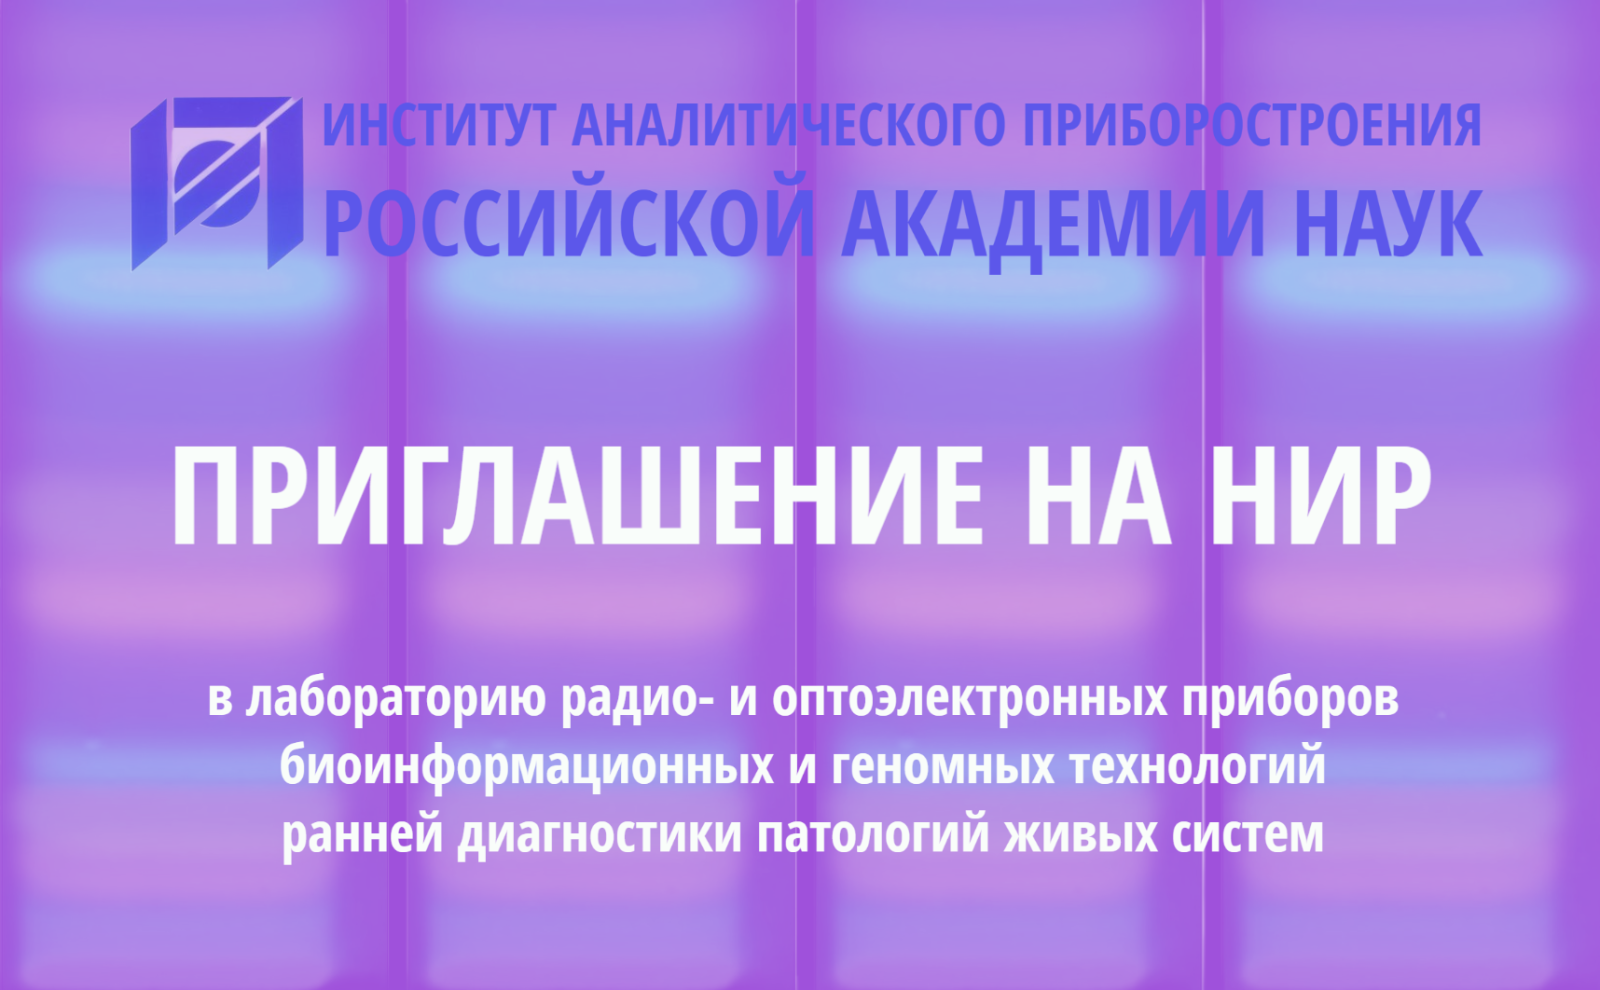 Приглашение на НИР от Института аналитического приборостроения РАН